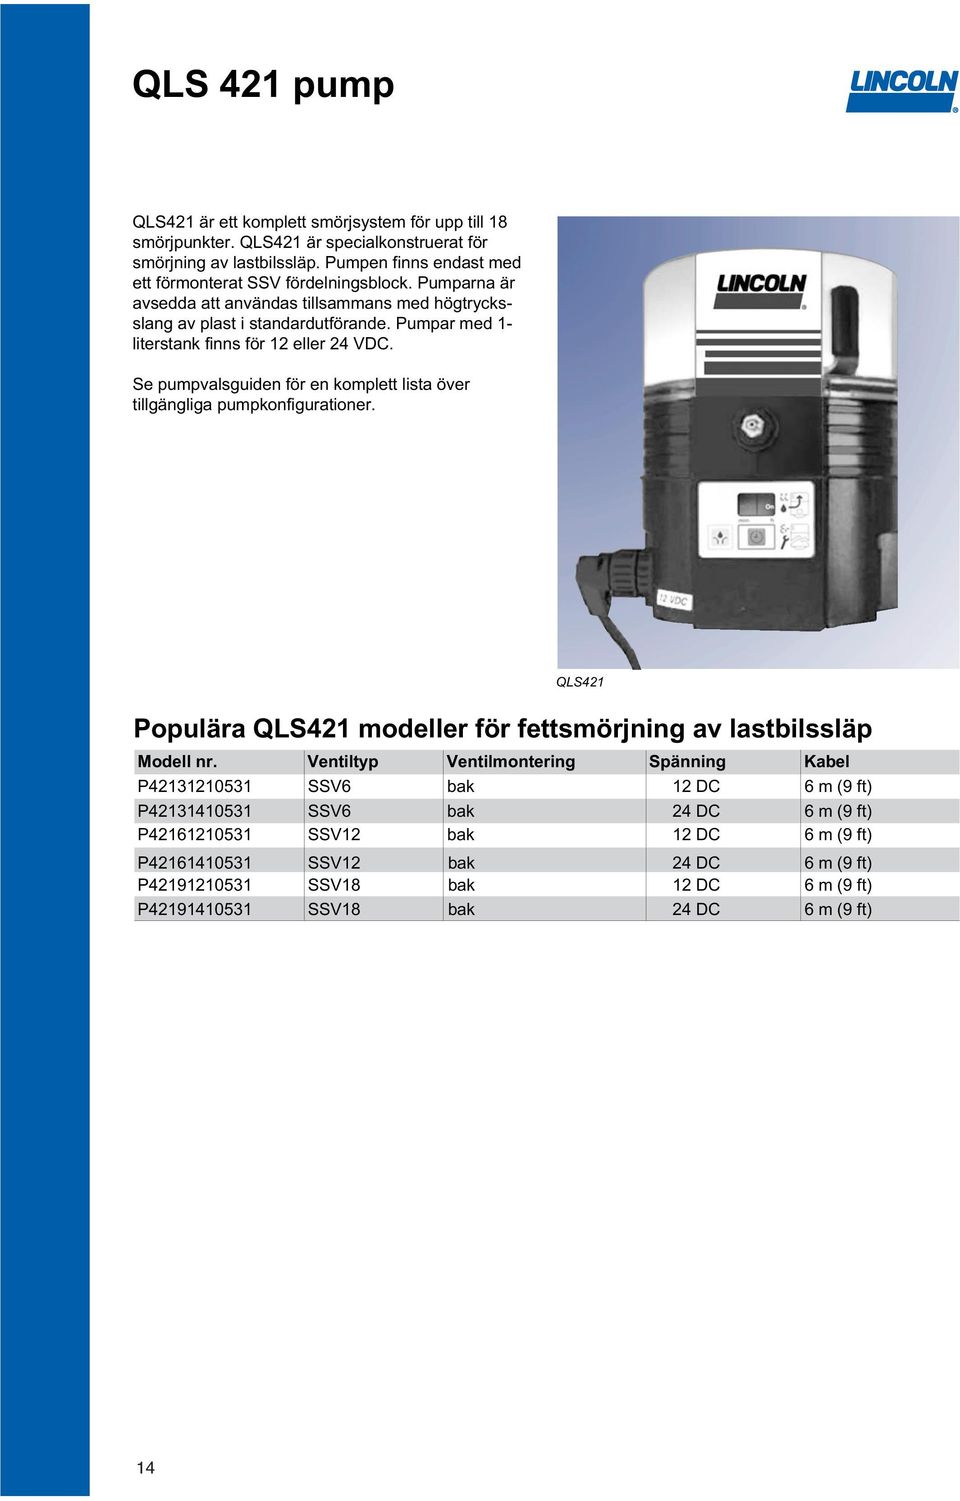 Pumpar med 1- literstank finns för 12 eller 24 VDC. Se pumpvalsguiden för en komplett lista över tillgängliga pumpkonfigurationer.